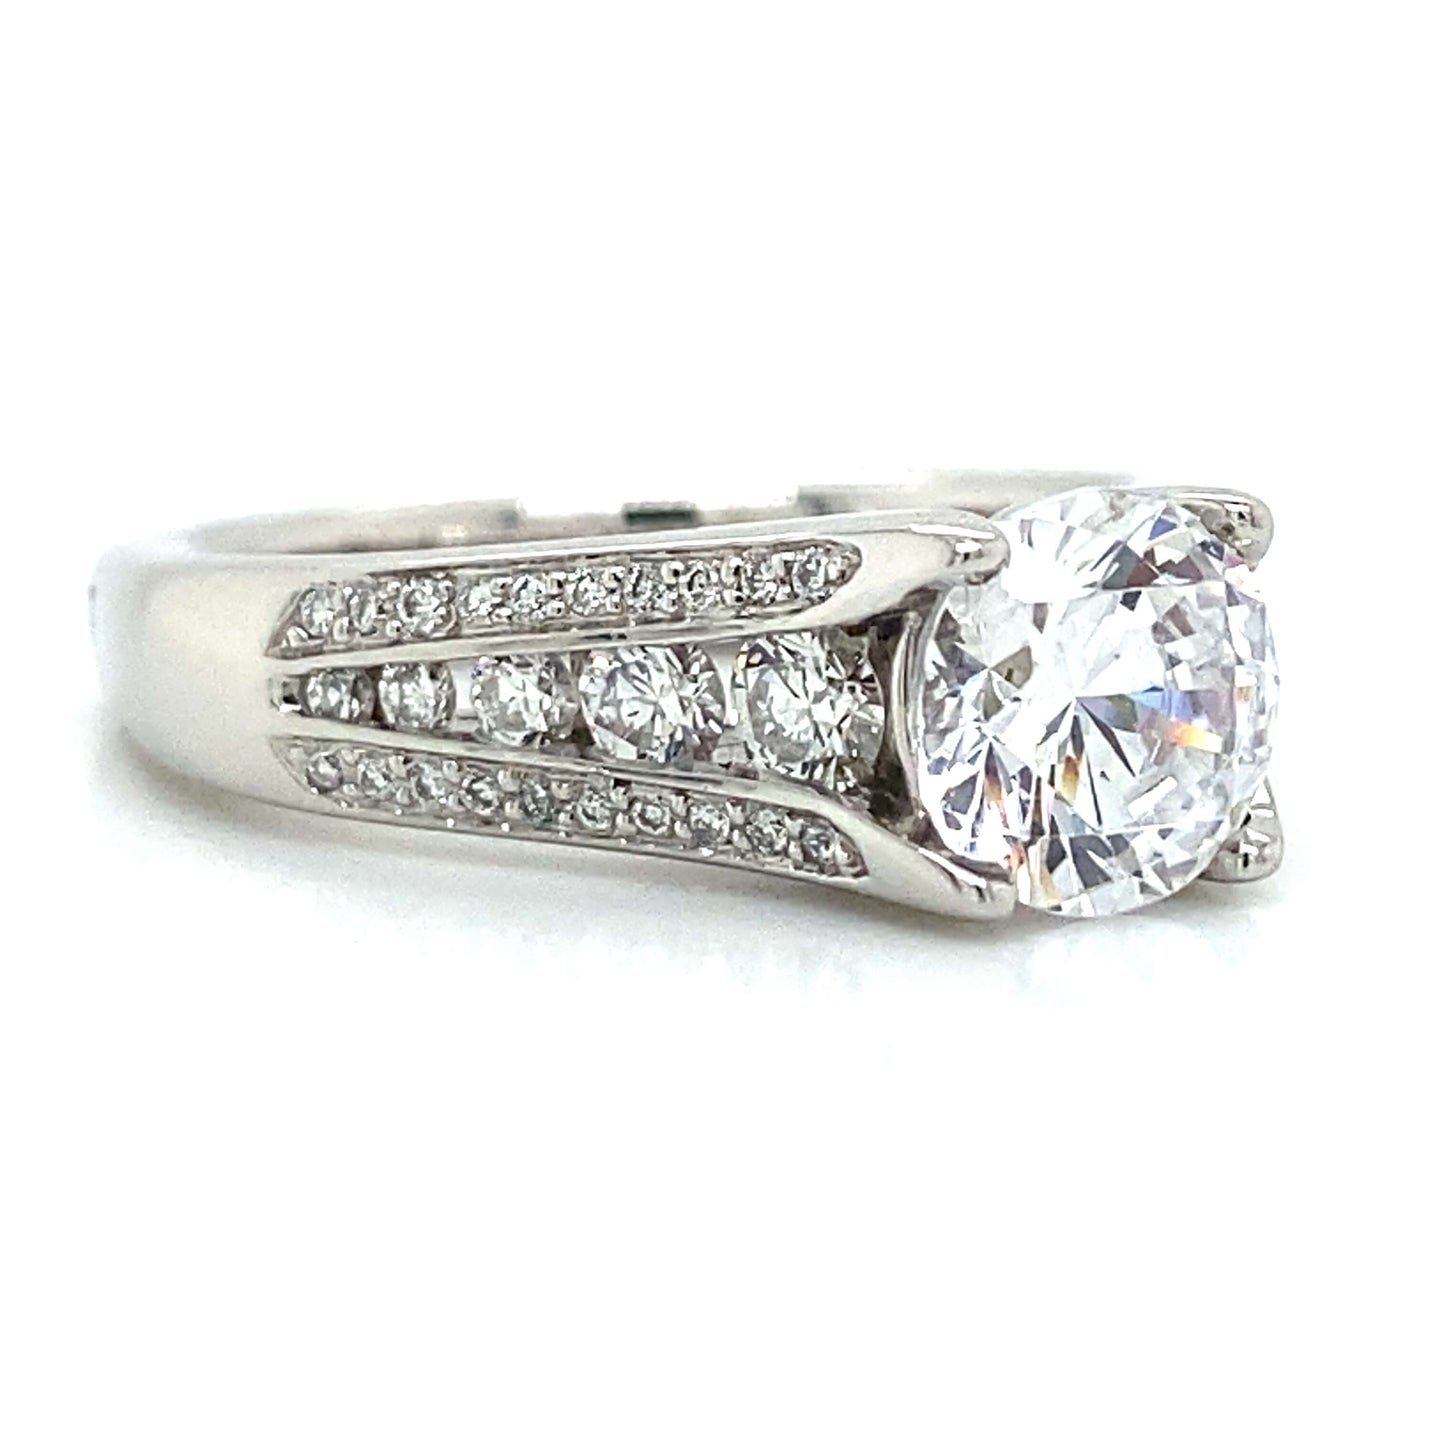 Ritani Pave Engagement Ring in Platinum